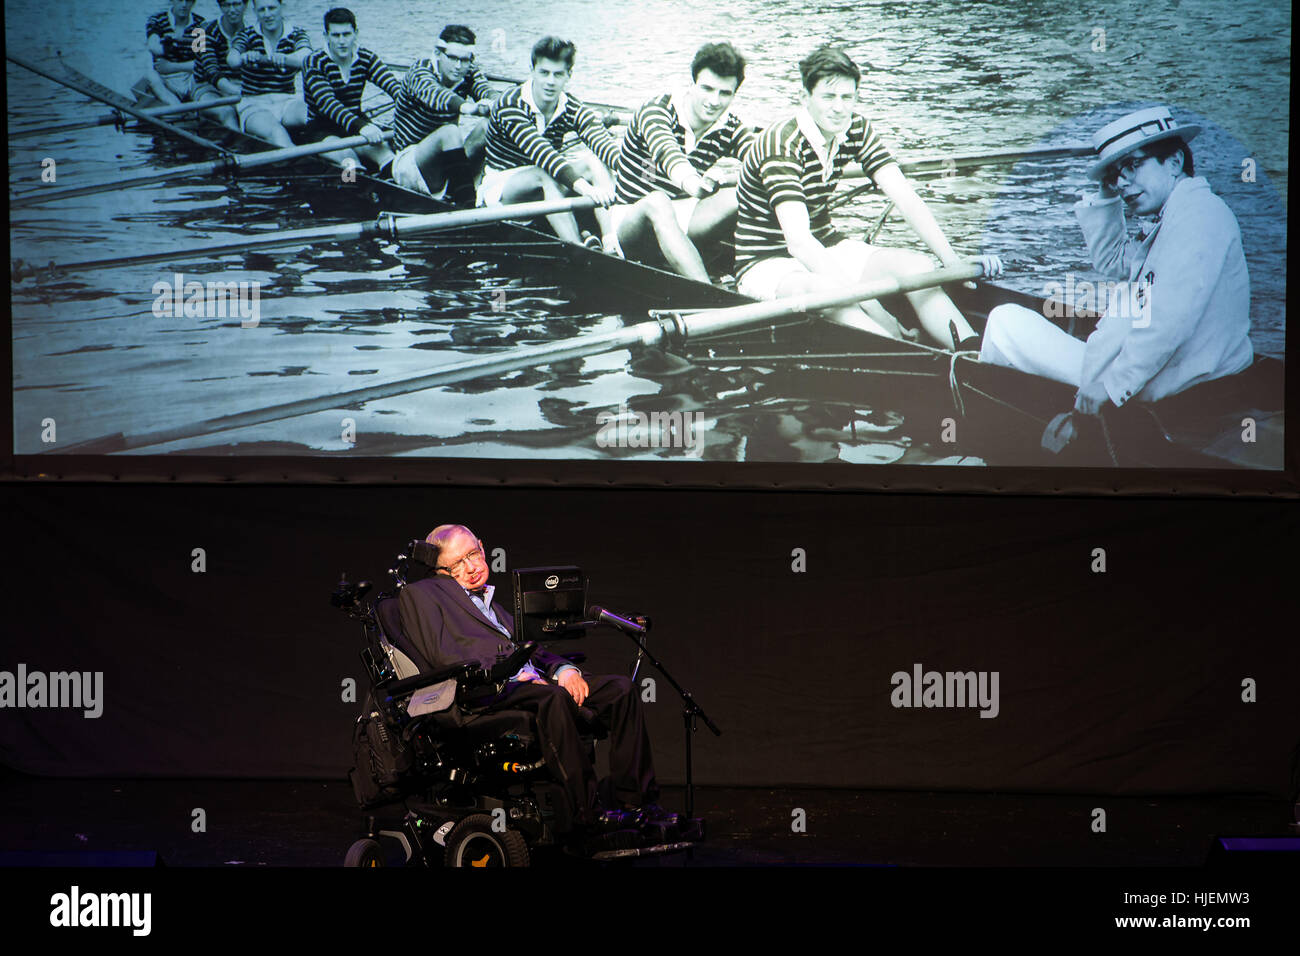 Stephen Hawking, britischer Wissenschaftler, weltberühmten physicistportrait mit Hochschule Bilder von seinem jungen Alter im Hintergrund, Starmus Festival Stockfoto